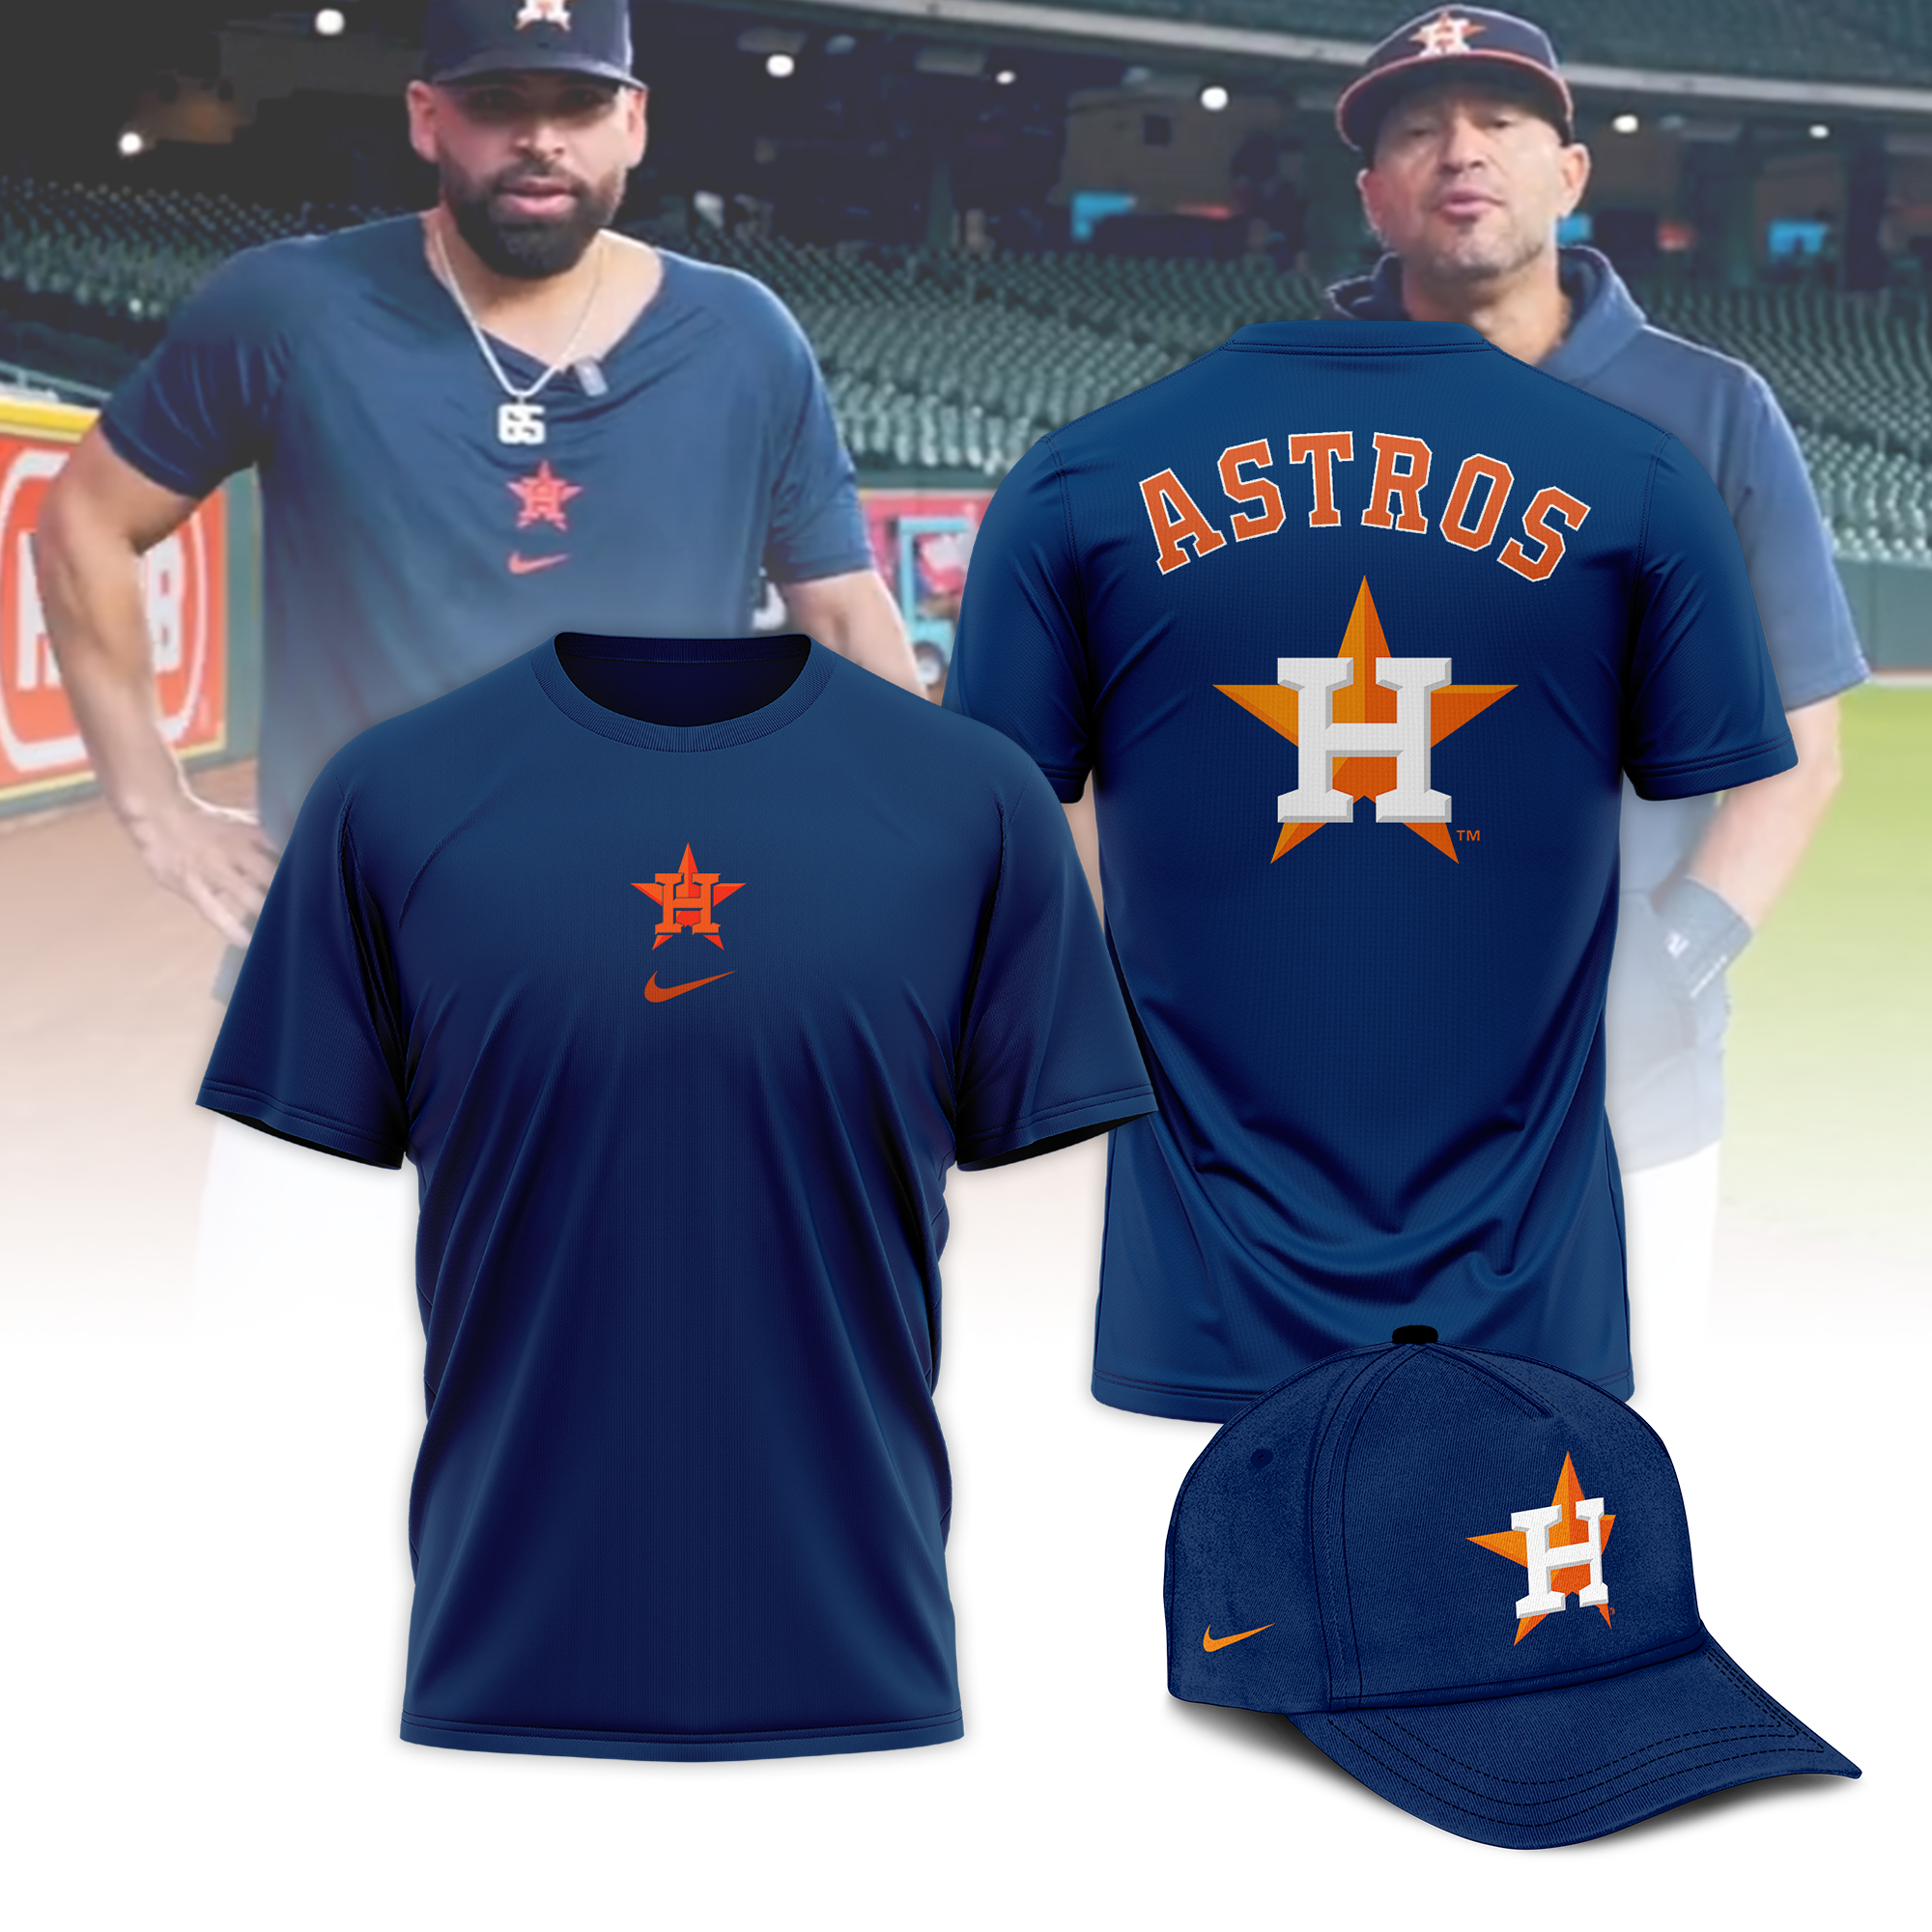 Houston Astros Size 4XL Men's MLB Fan Apparel & Souvenirs for sale